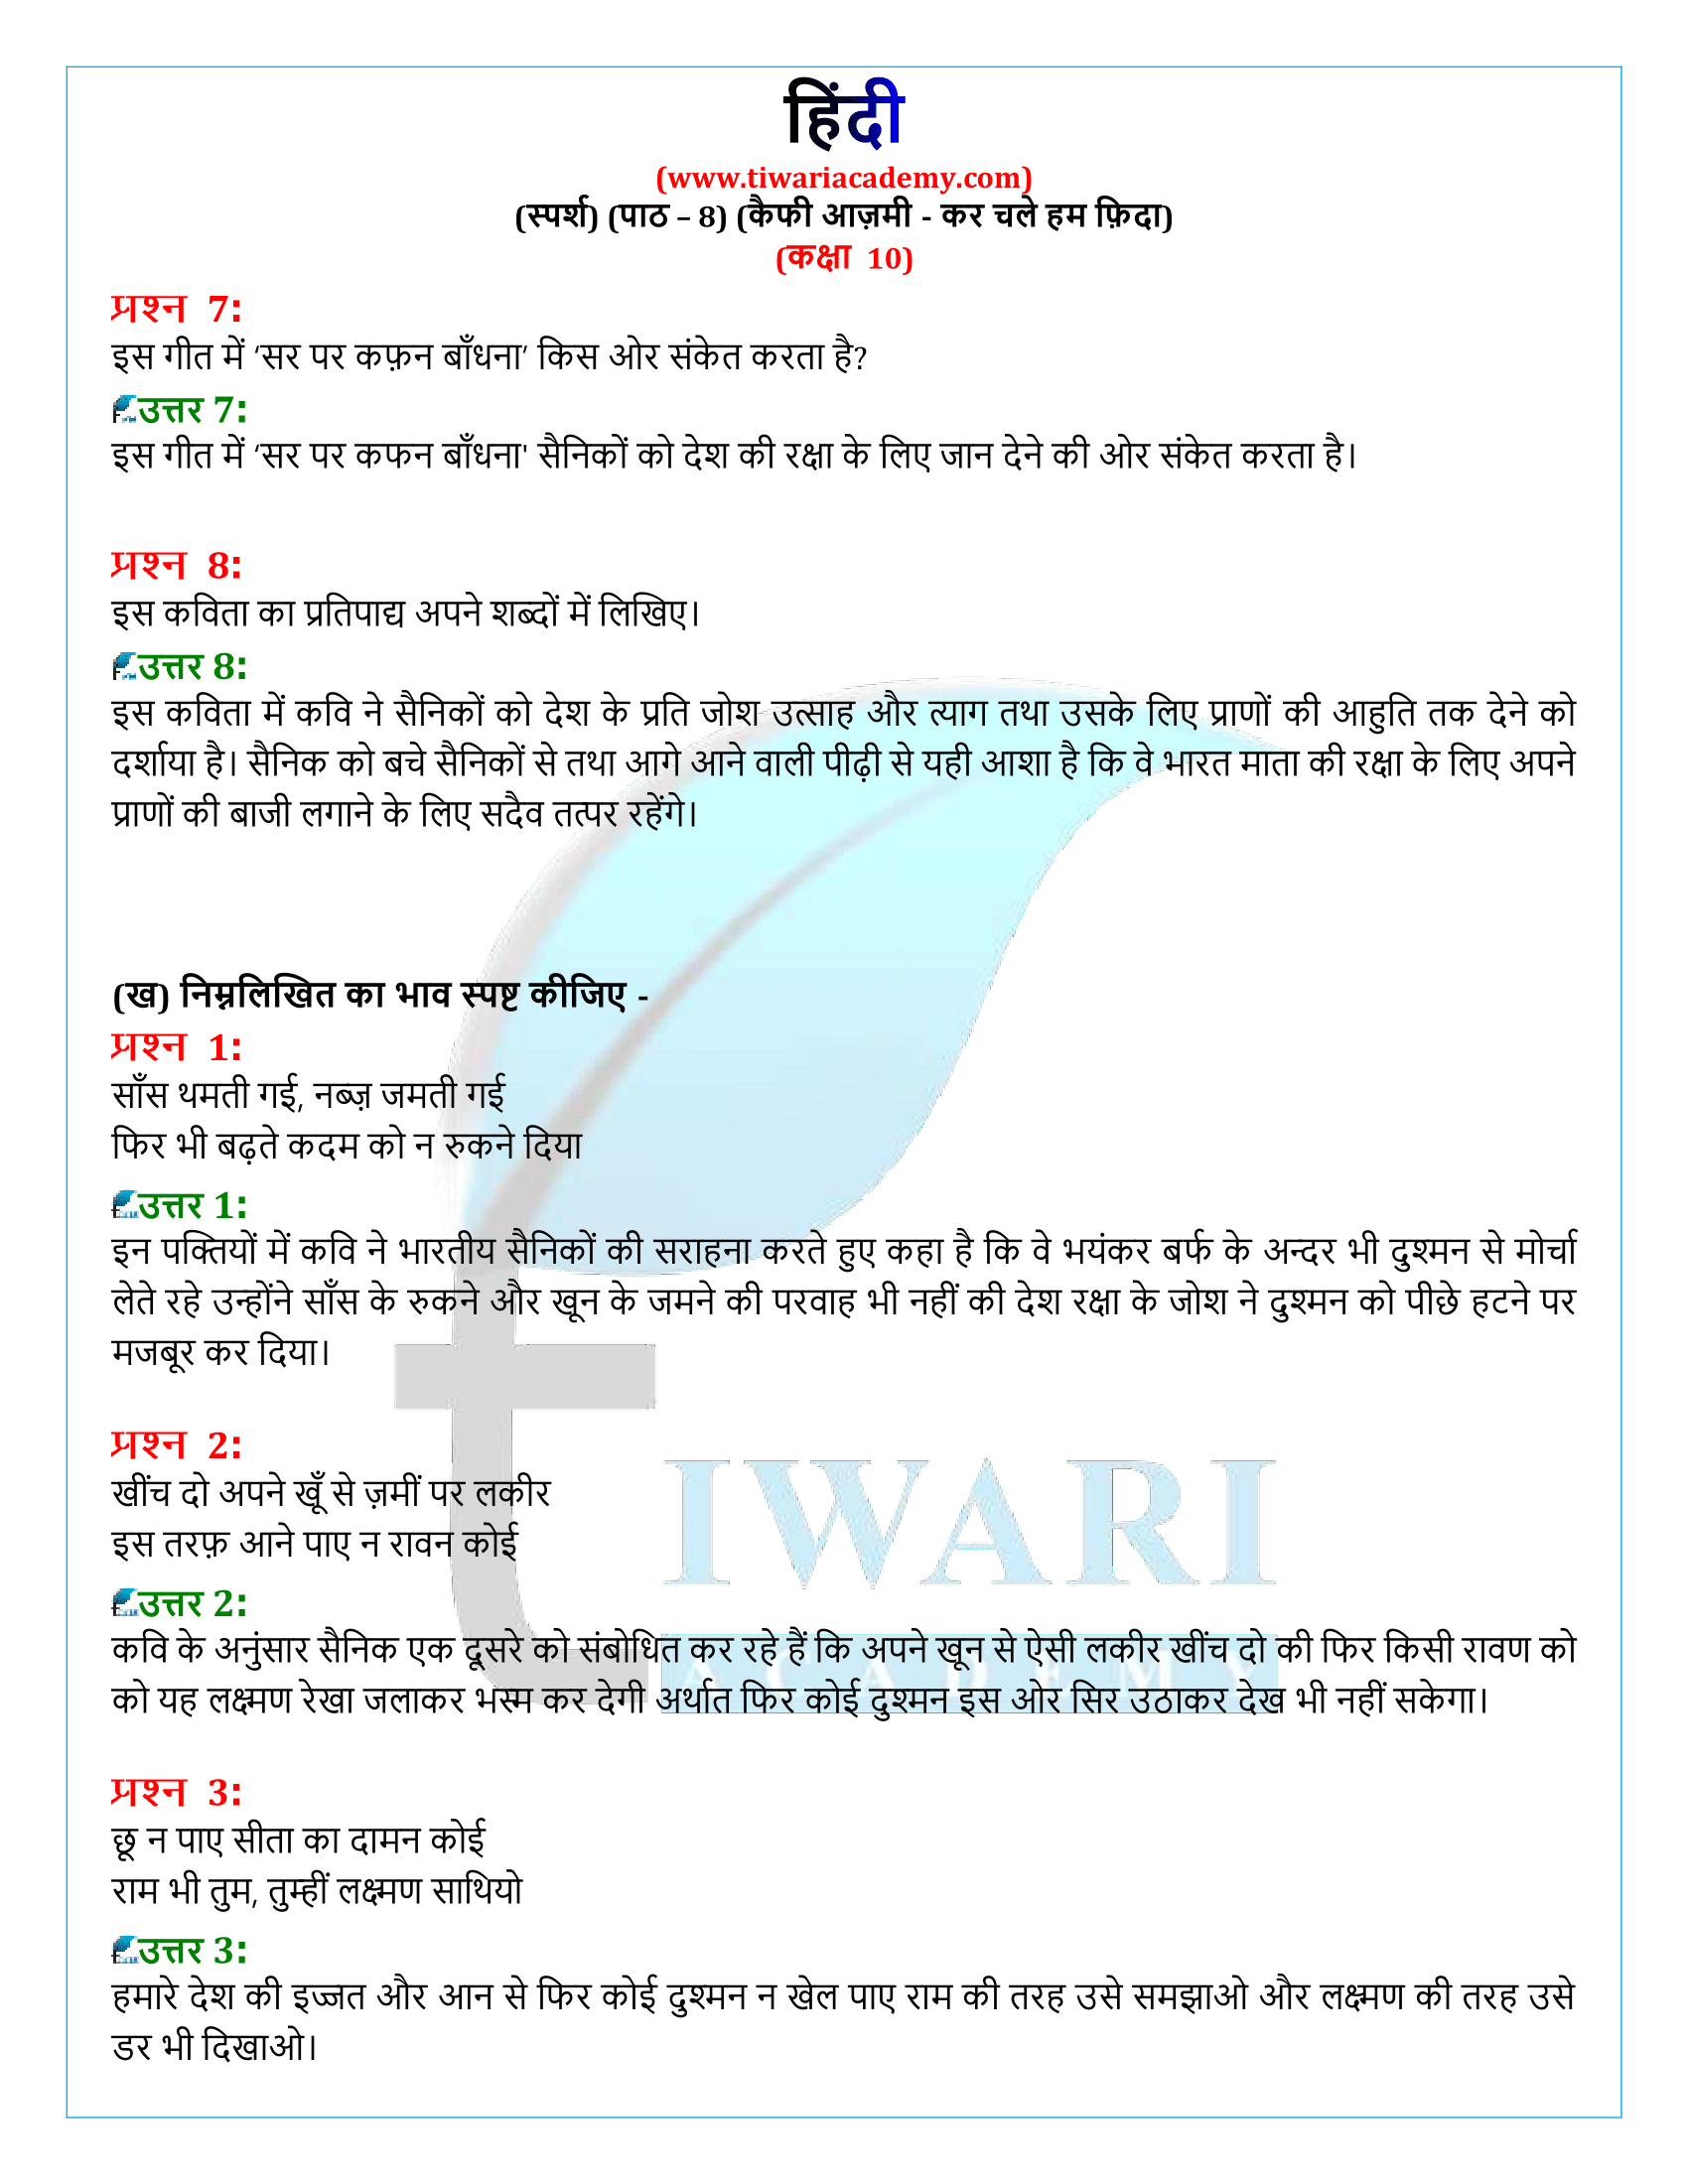 कक्षा 10 हिंदी स्पर्श अध्याय 8 के समाधान